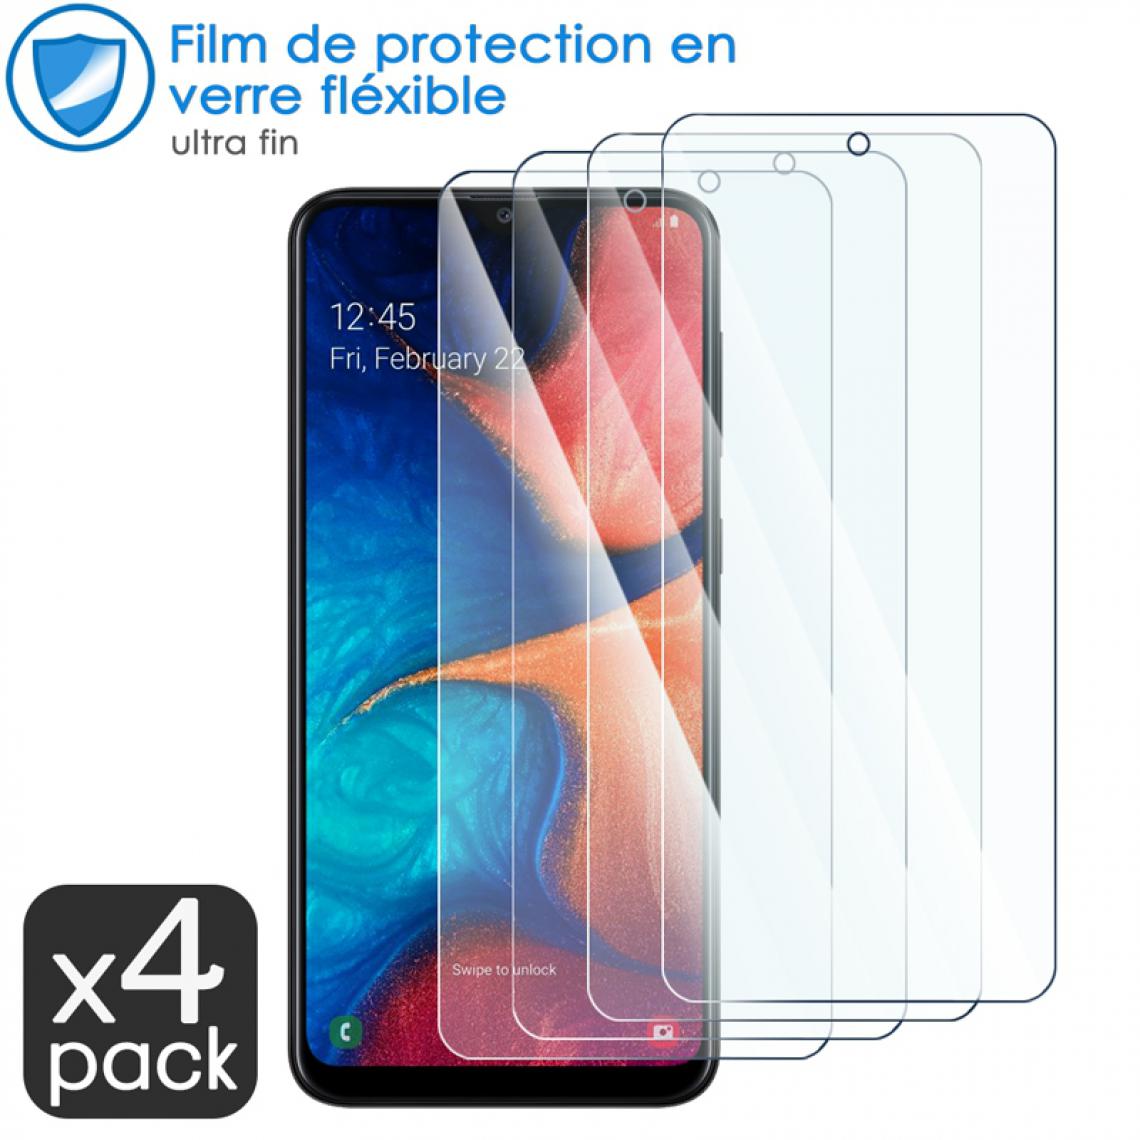 Karylax - Film de Protection d'écran en Verre Fléxible Dureté 9H pour XGODY Note 7 (Pack x4) - Protection écran smartphone